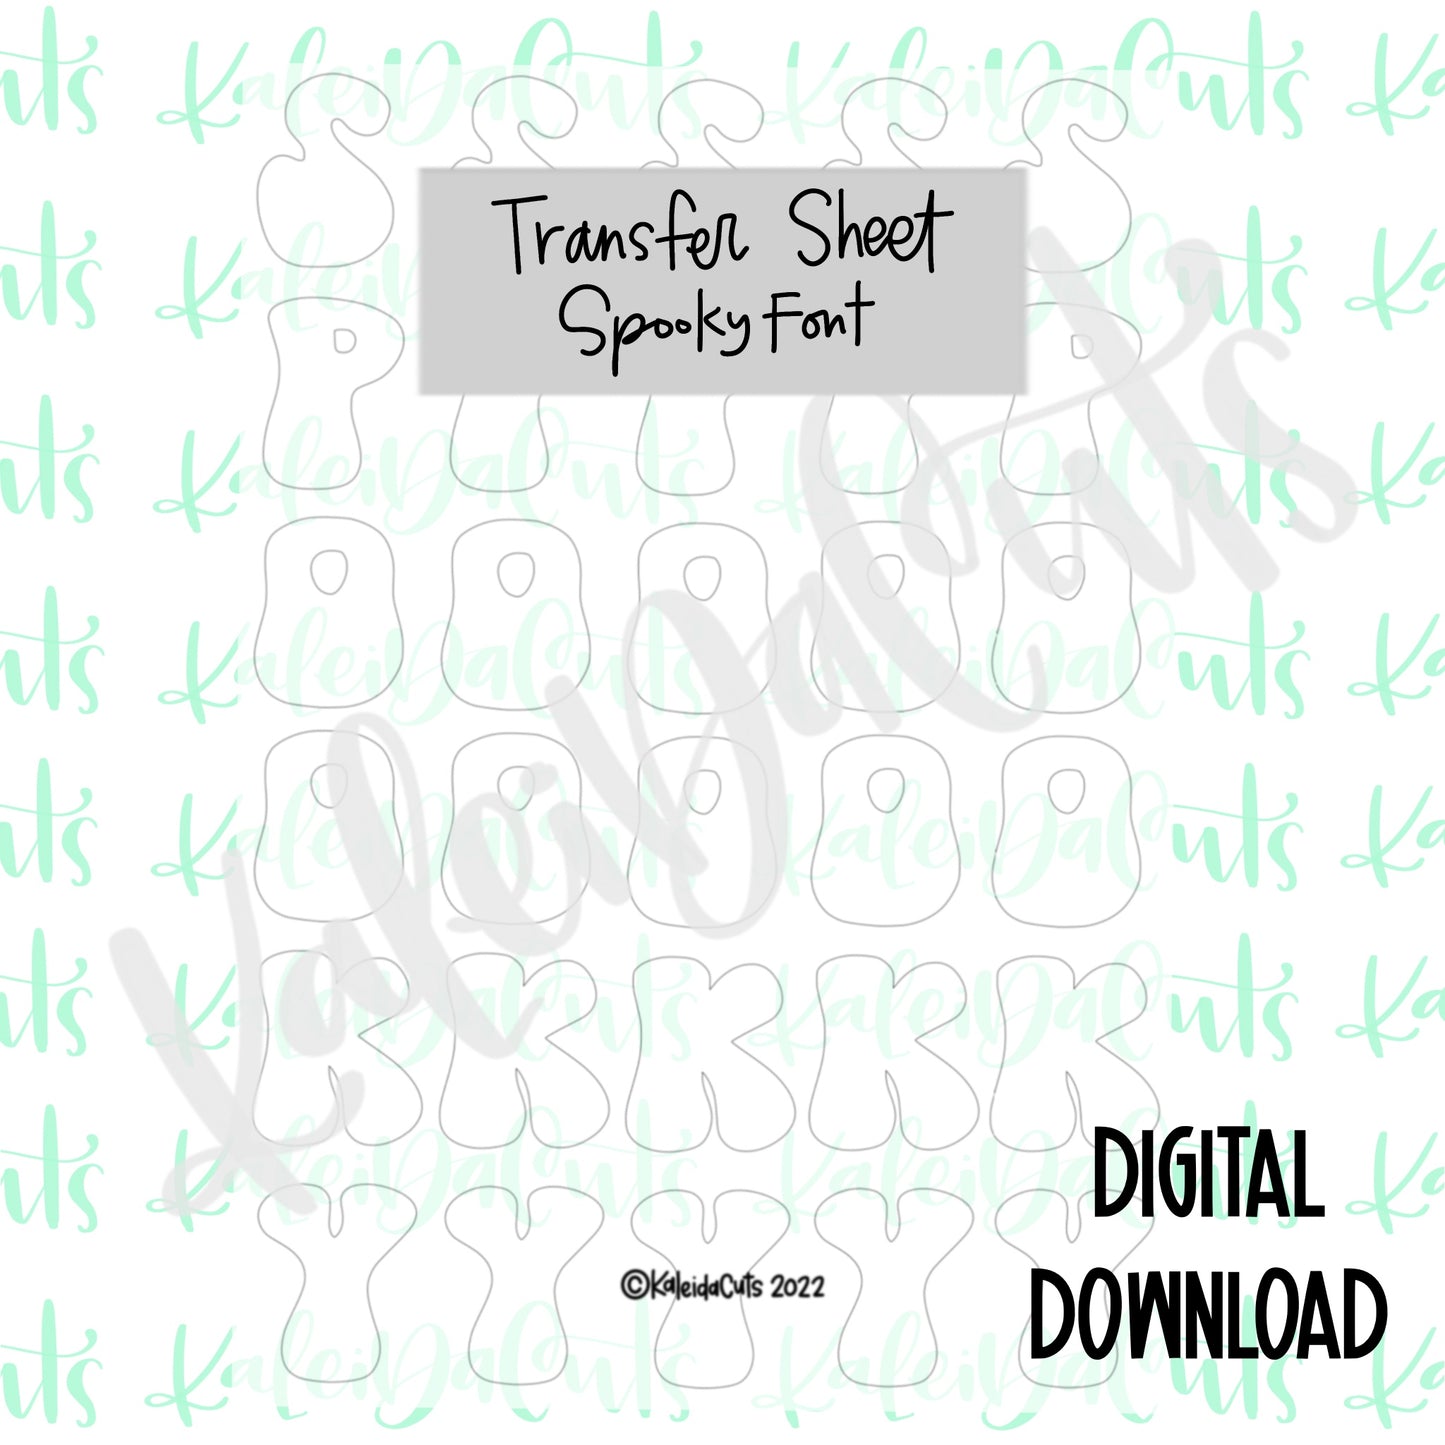 Spooky Font Transfer Sheet Digital Download.